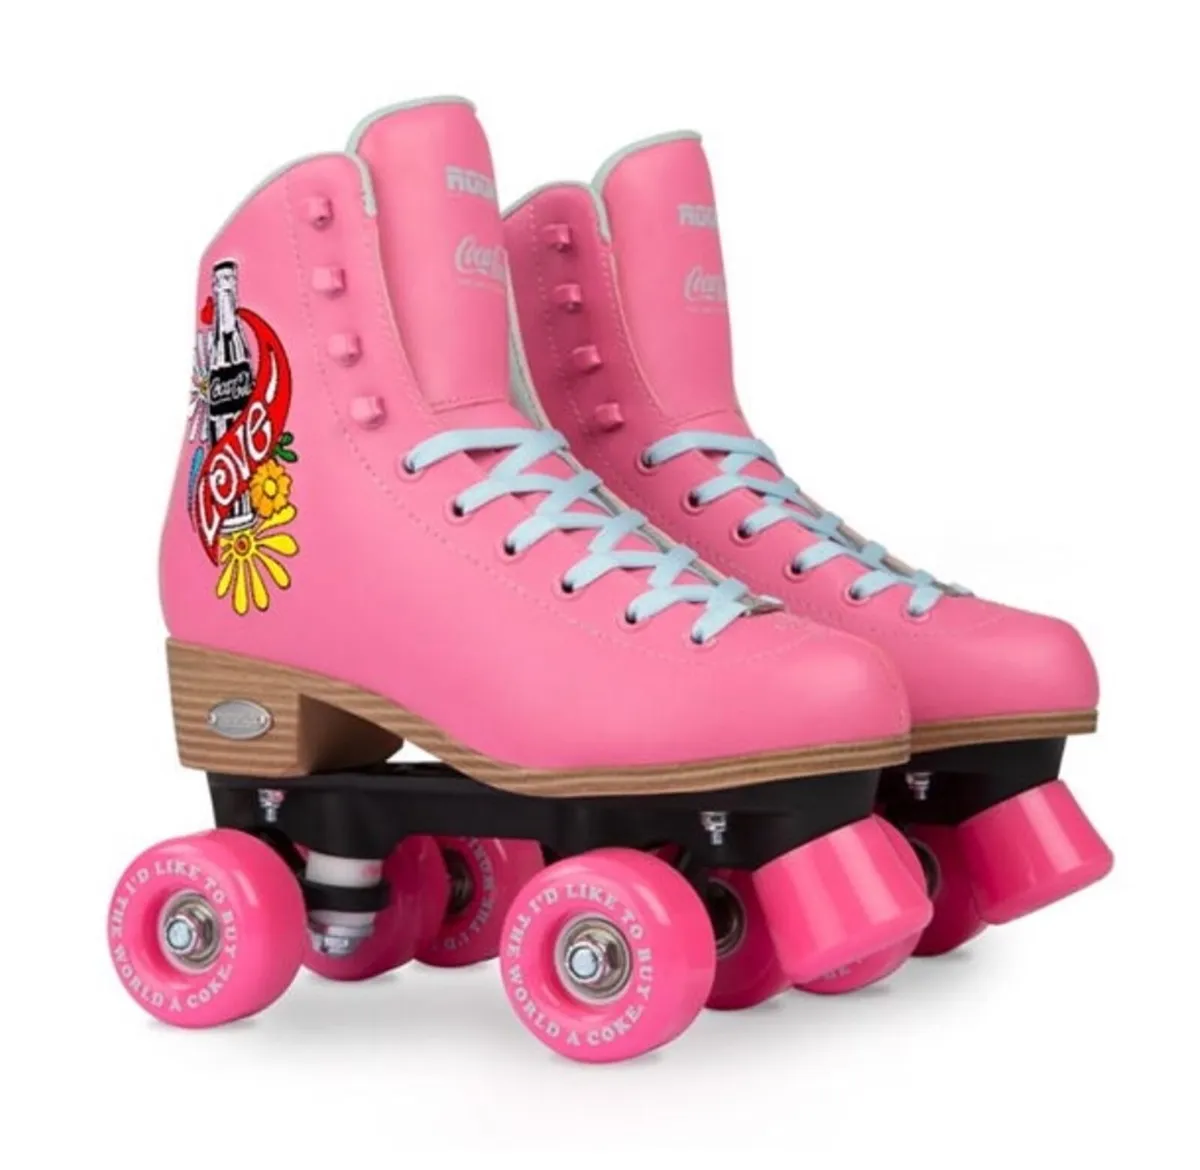 Women's Roller Skates Size 7